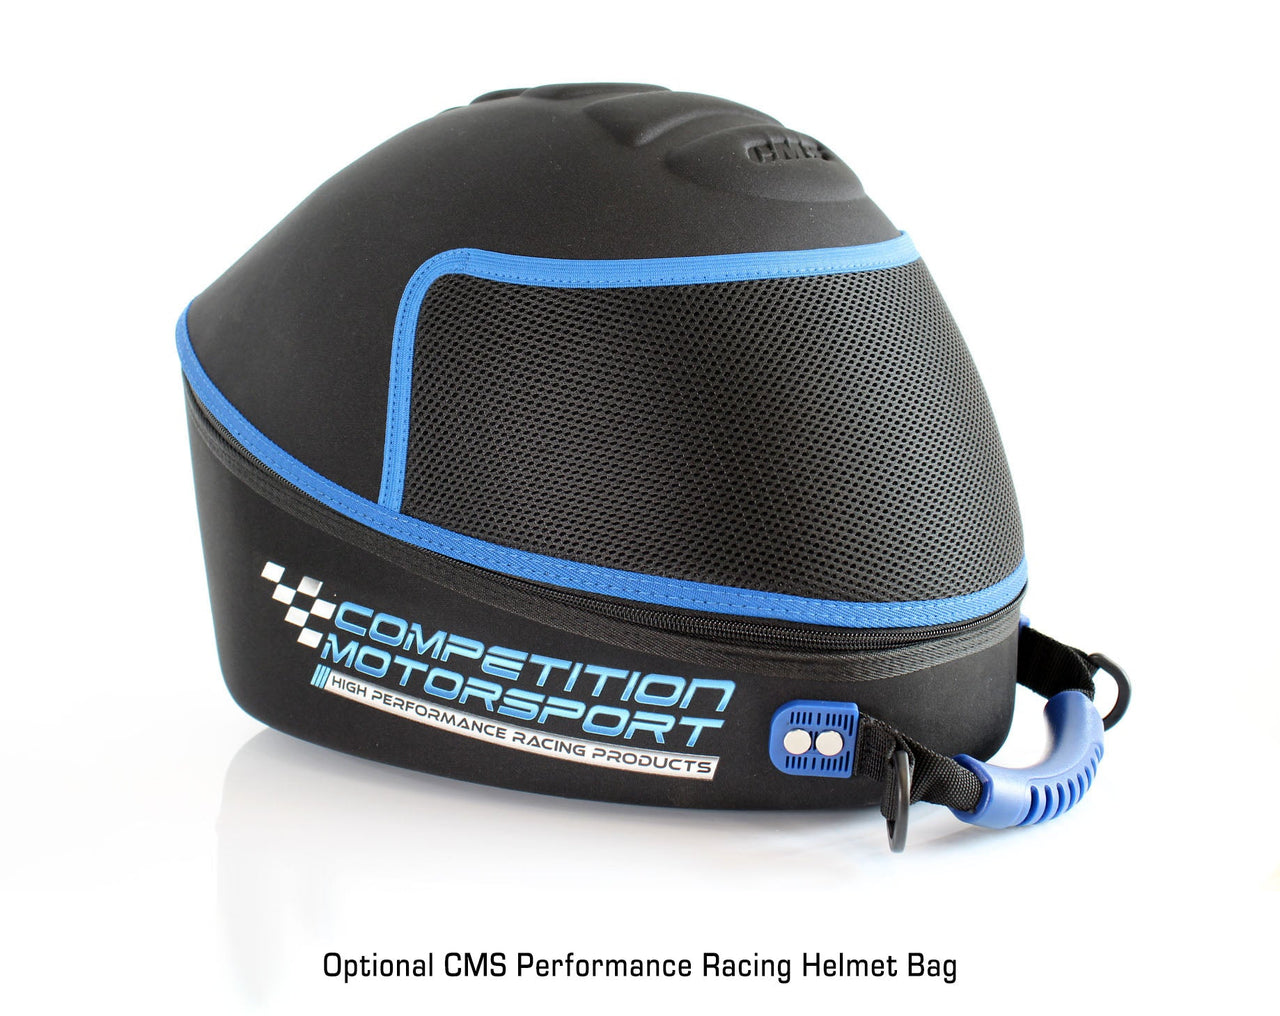 Bell BR8 Carbon Fiber Helmet SA2020 - Competition Motorsport